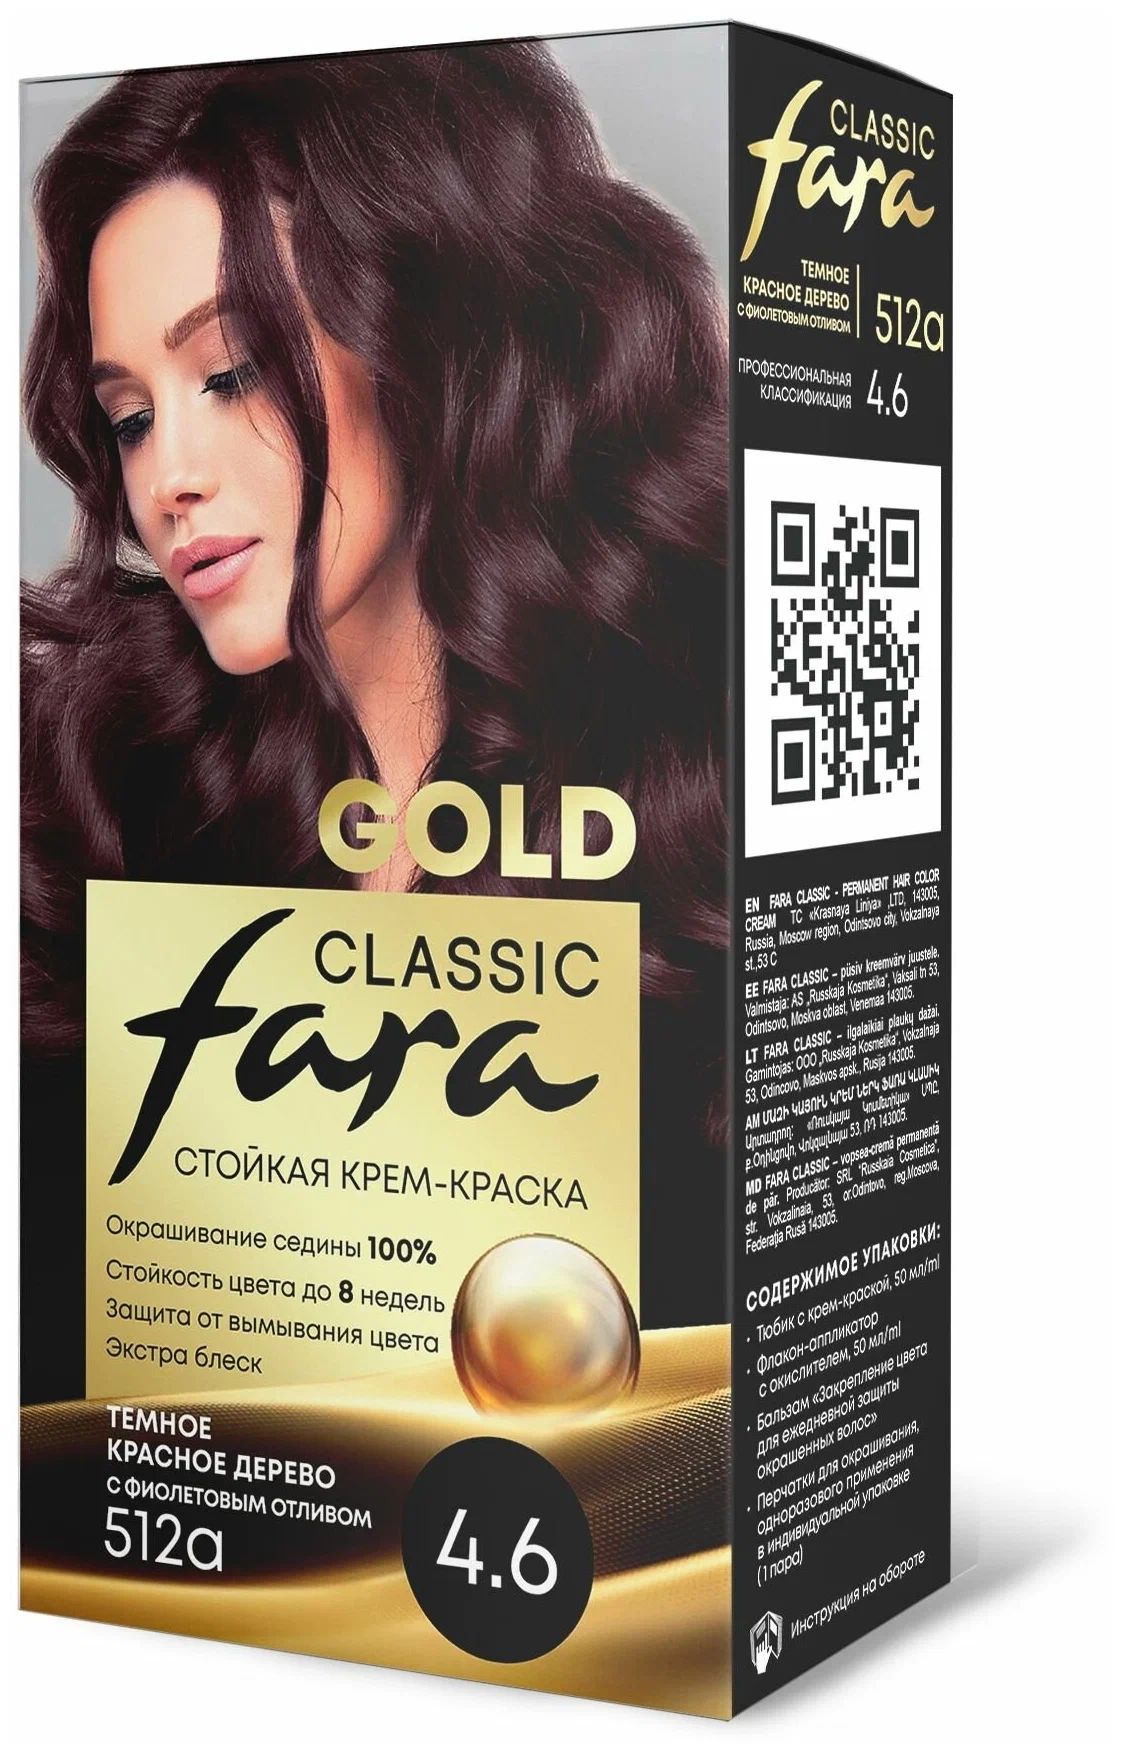 Крем-краска для волос Fara Classic Gold 512А красное дерево 4.6, 140 г